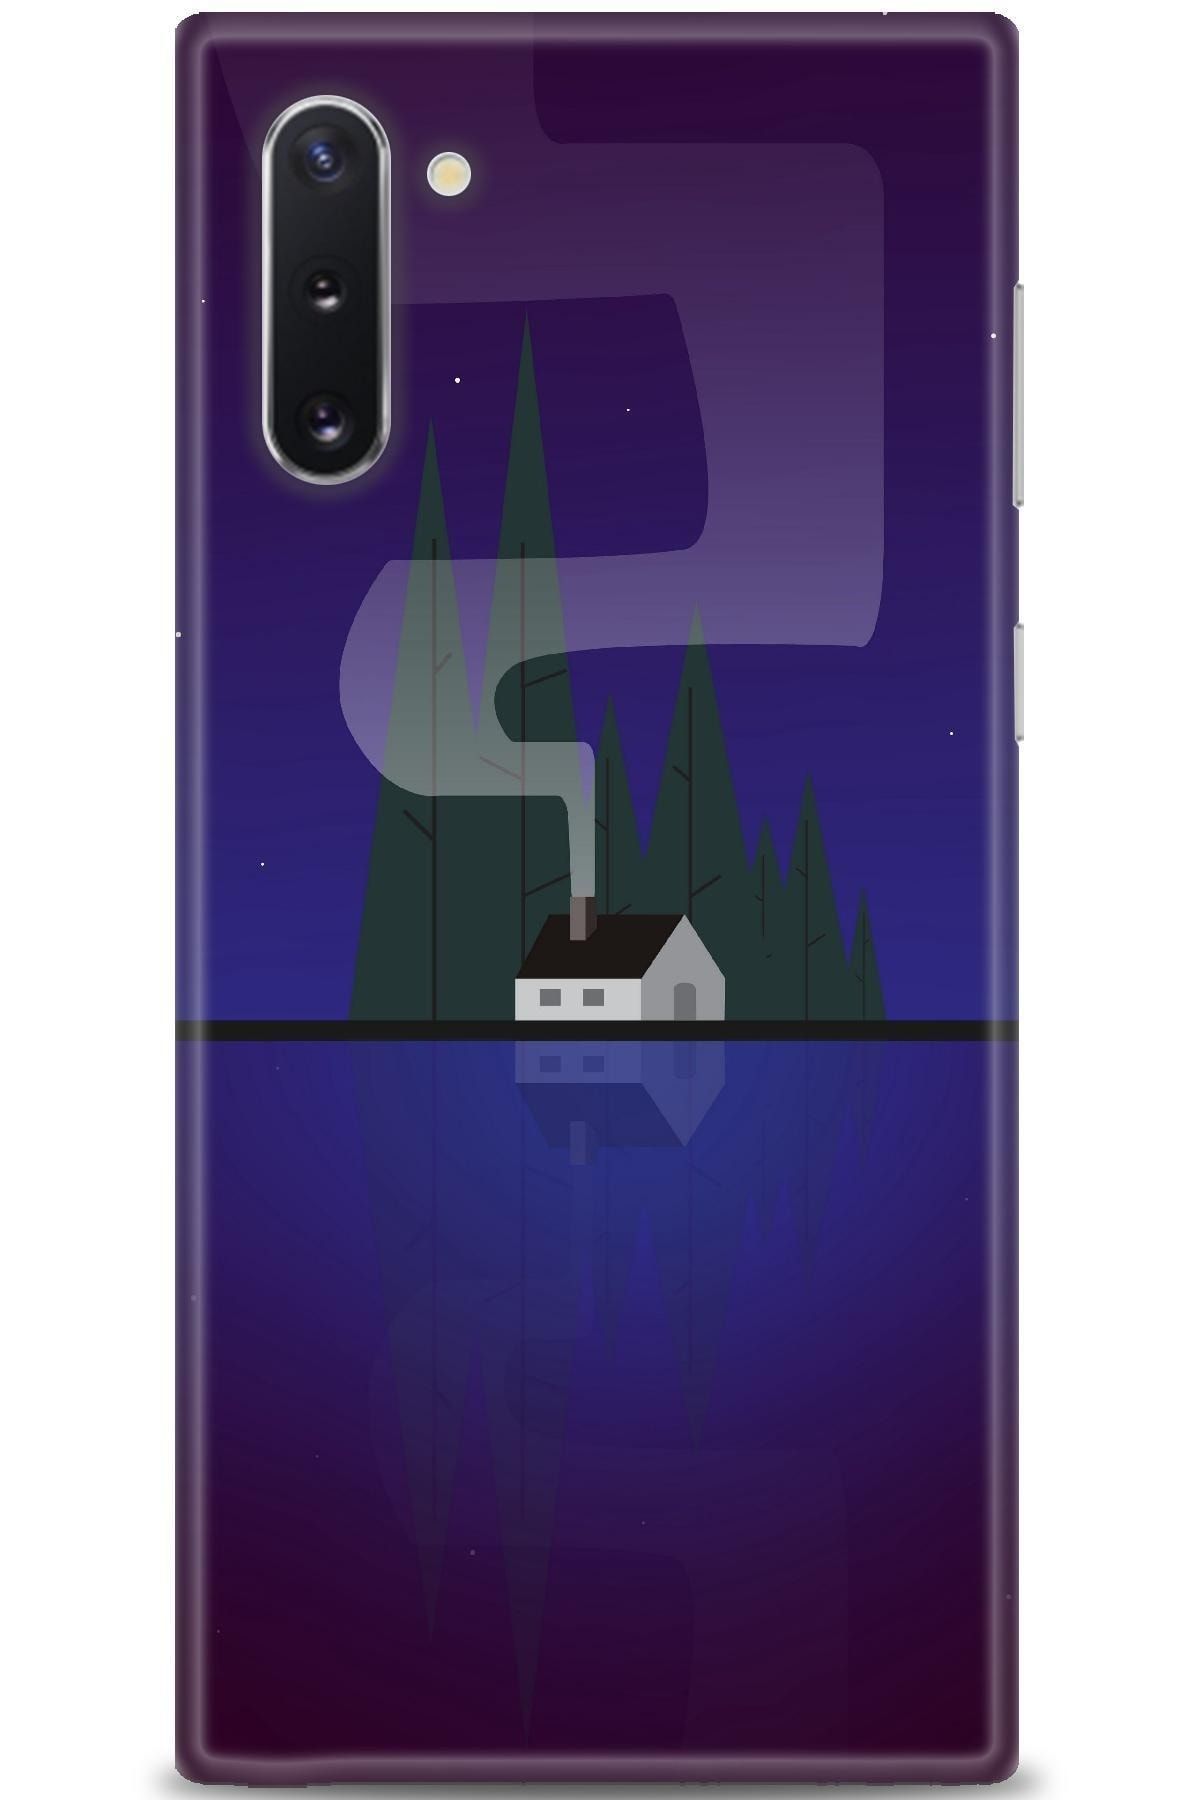 Noprin Samsung Galaxy Note 10 Kılıf Hd Baskılı Kılıf - House Lake + Nano Micro Ekran Koruyucu